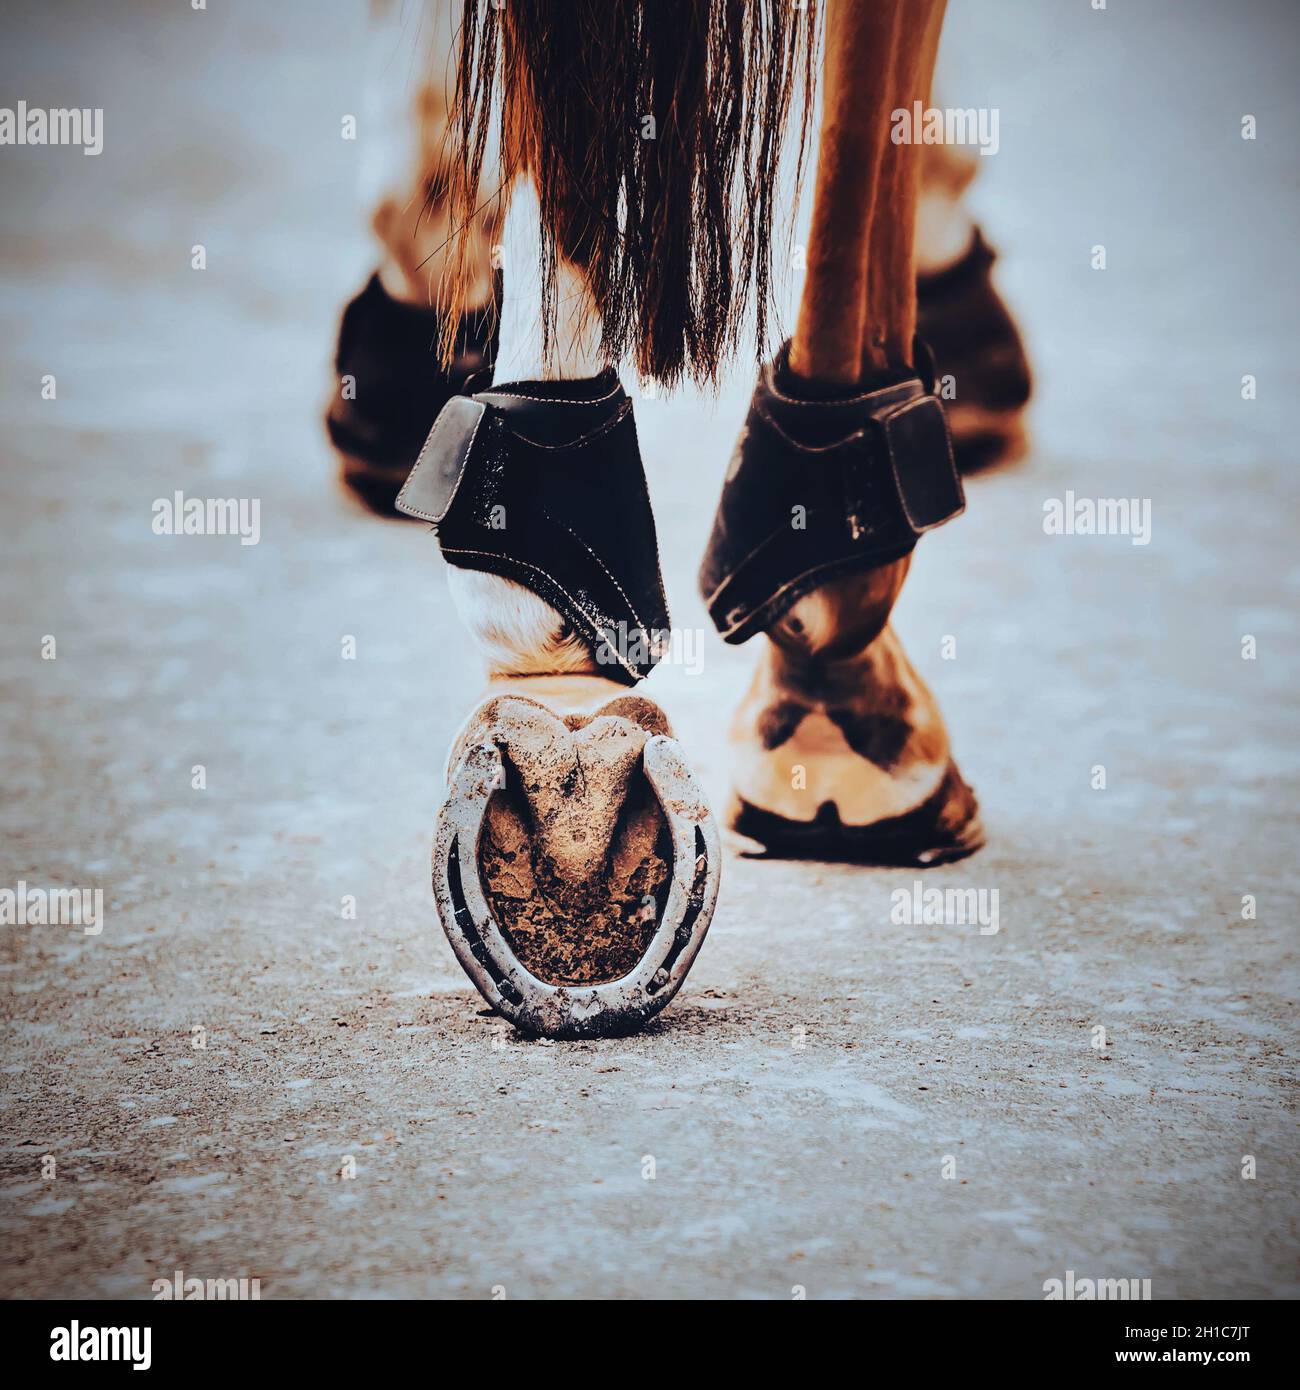 Eine Rückansicht eines Sauerampfer-Pferdes mit einem dunklen Schwanz, der auf einer staubigen Straße entlang geht und mit schrottenden Hufen darauf tritt. Nahaufnahme des Hufeisens aus Metall. Stockfoto